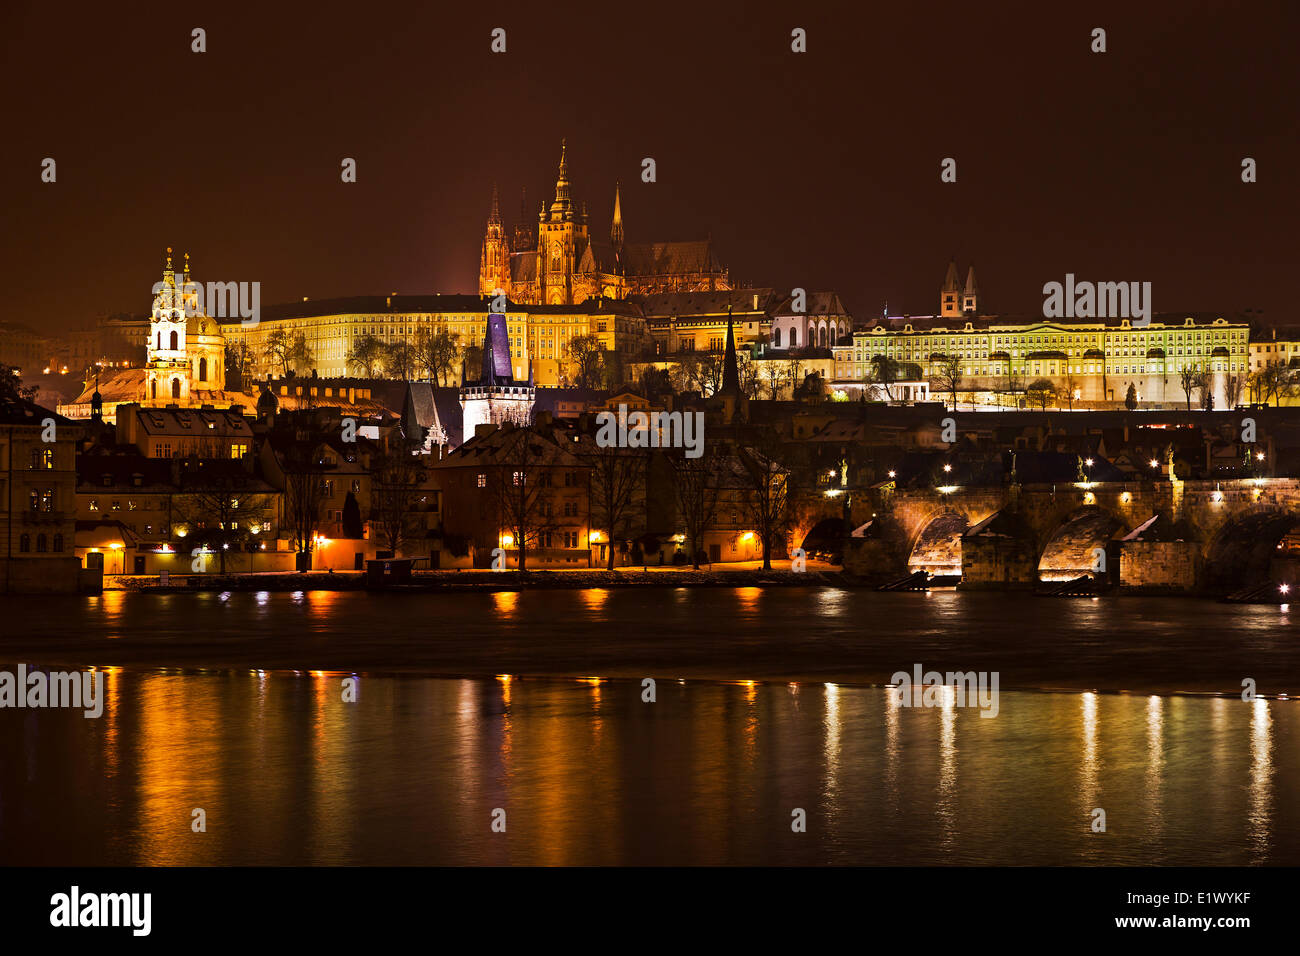 Praga, República Checa, el Castillo de Praga, el Puente de Carlos,Río Vltava, escena nocturna, Foto de stock